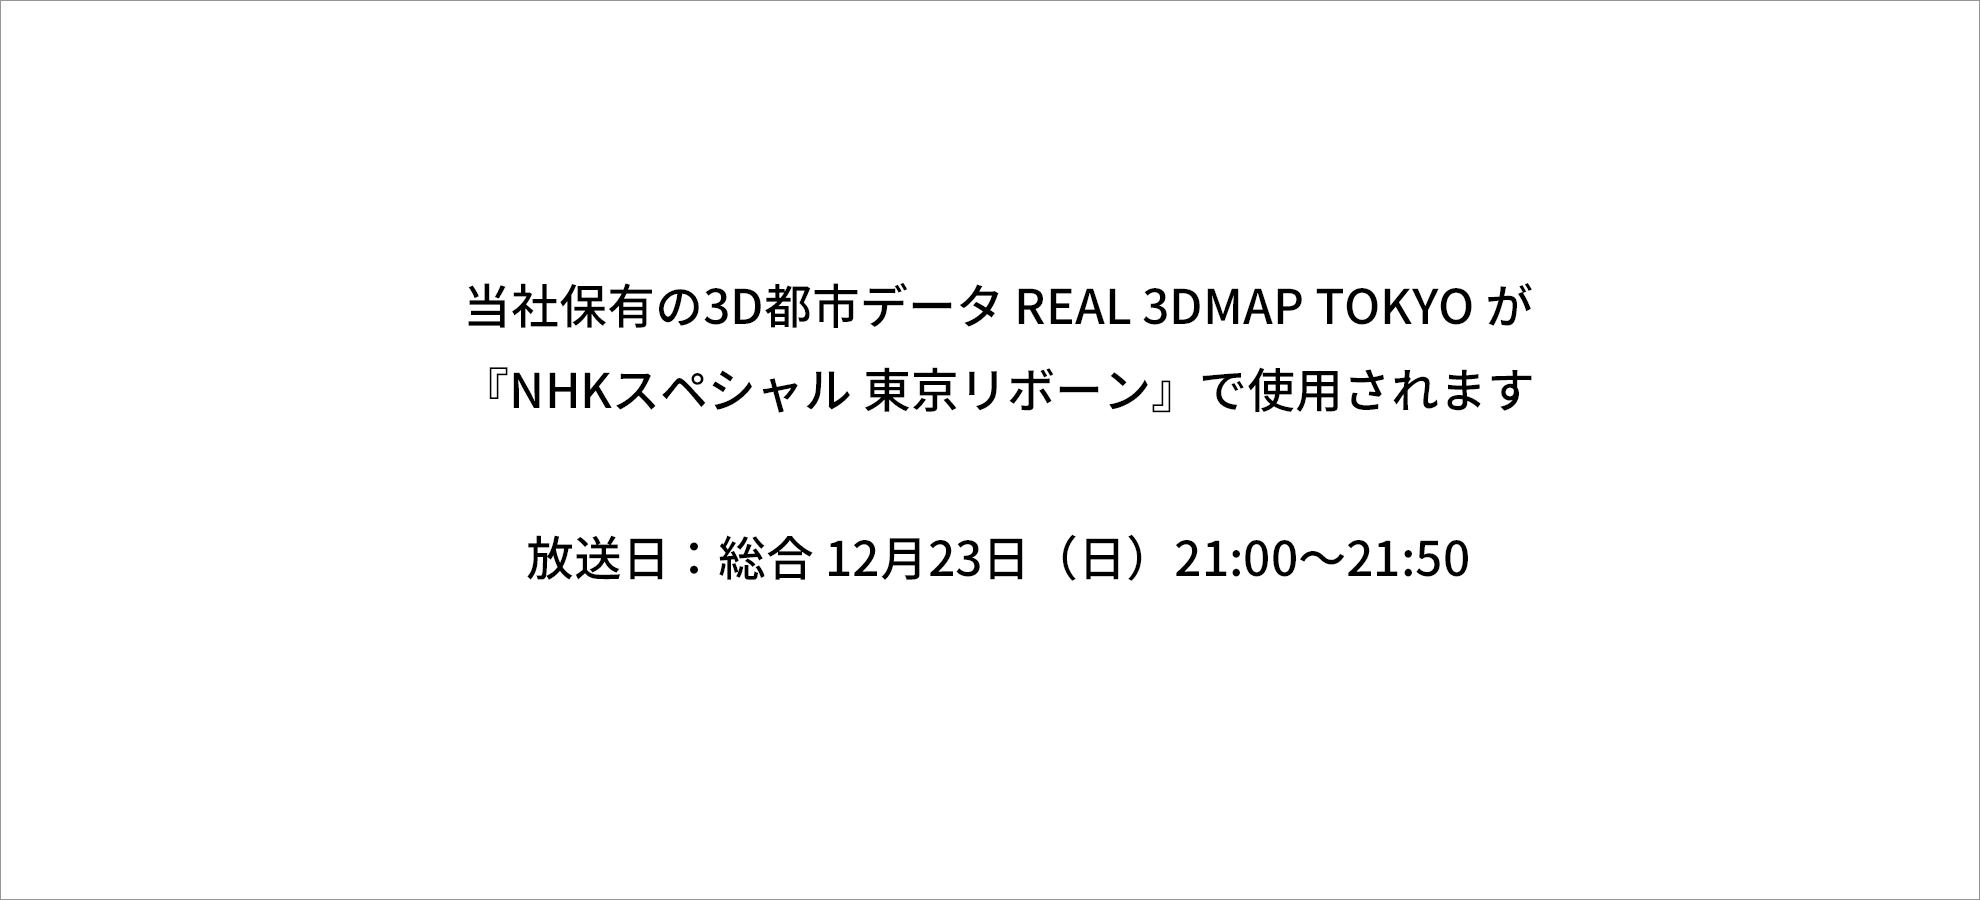 『NHKスペシャル 東京リボーン』で REAL 3DMAP TOKYO が使用されます  終了しました